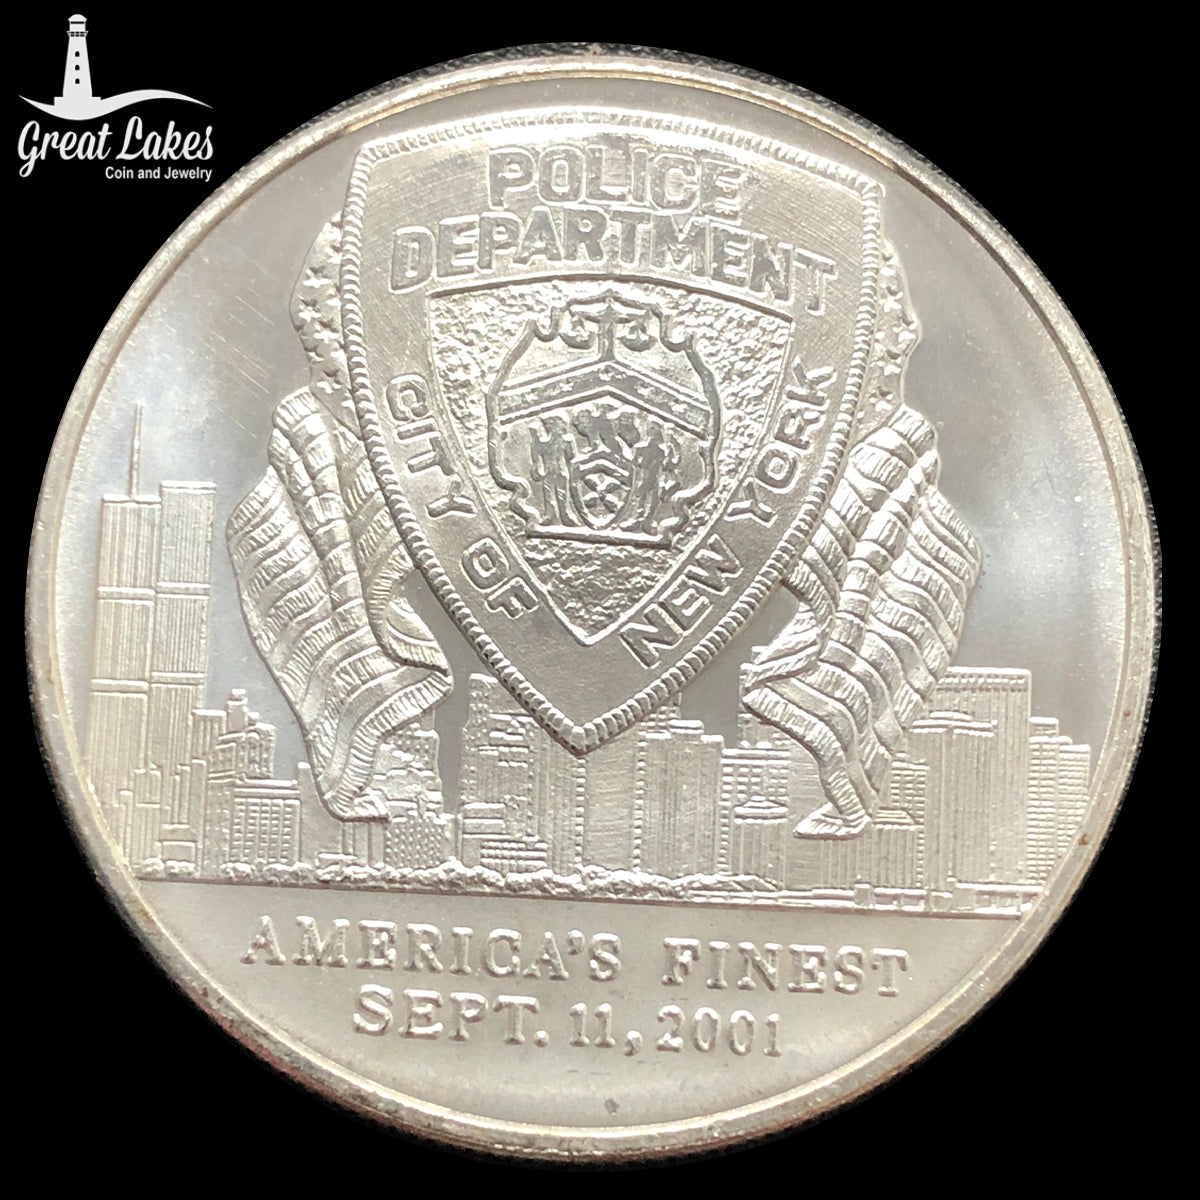 America&#39;s Finest NYPD Commemorative 1 oz Silver Round